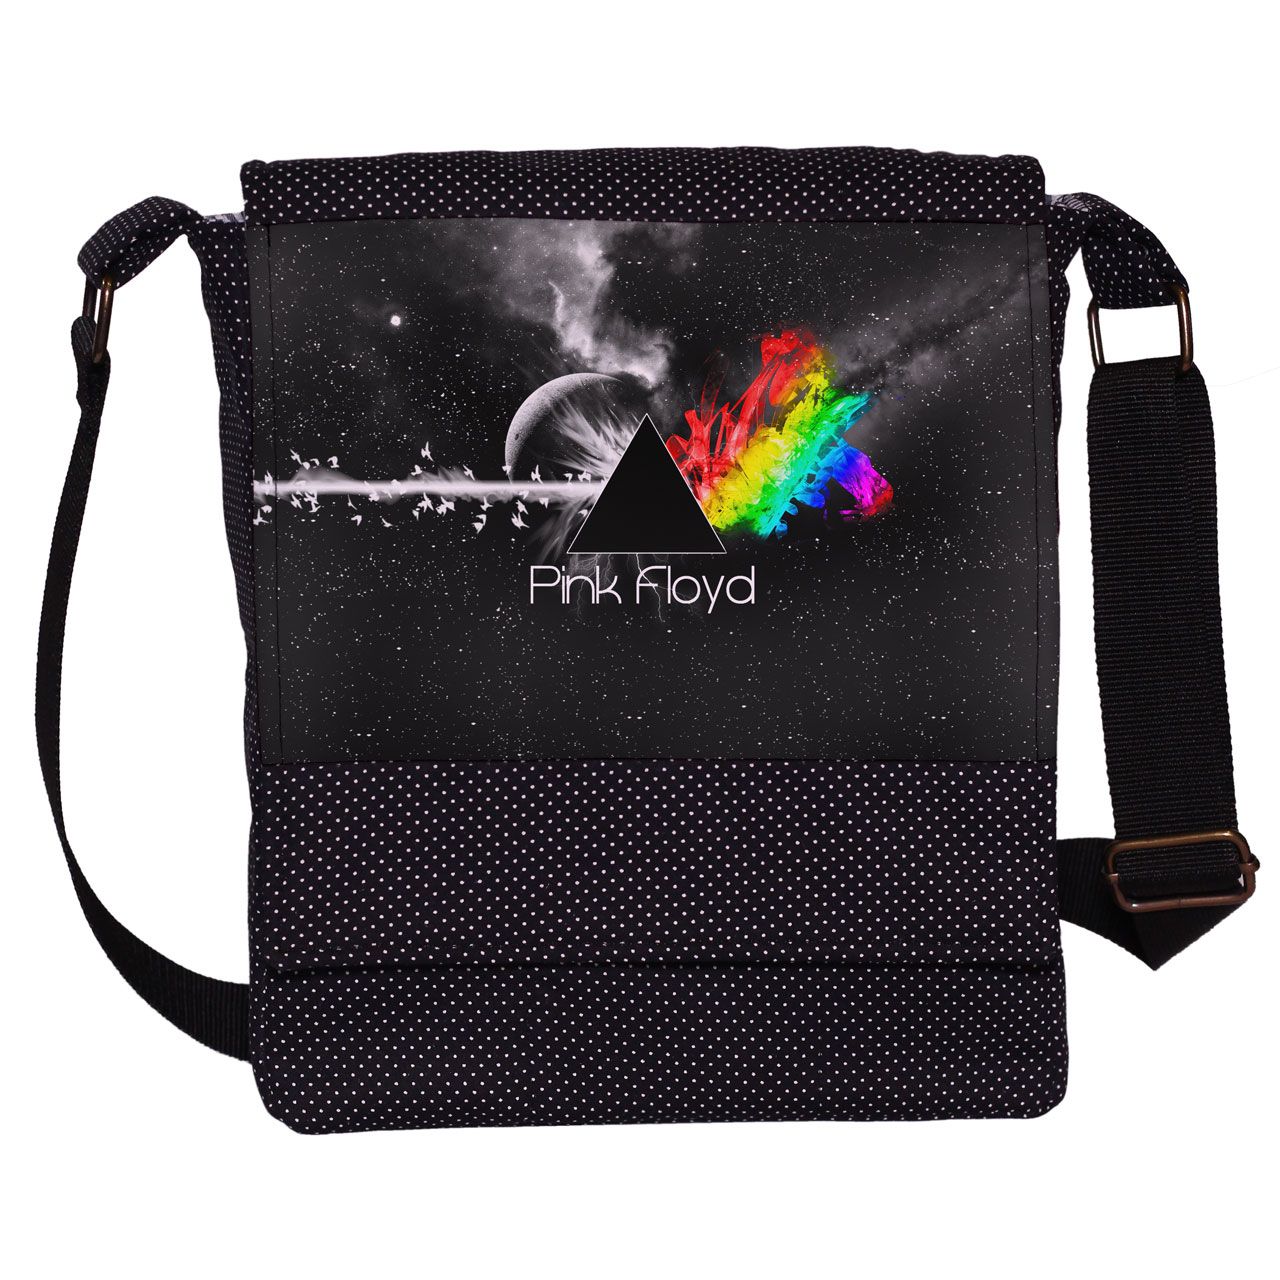 کیف دوشی چی چاپ طرح Pink Floyd کد 65656 -  - 1